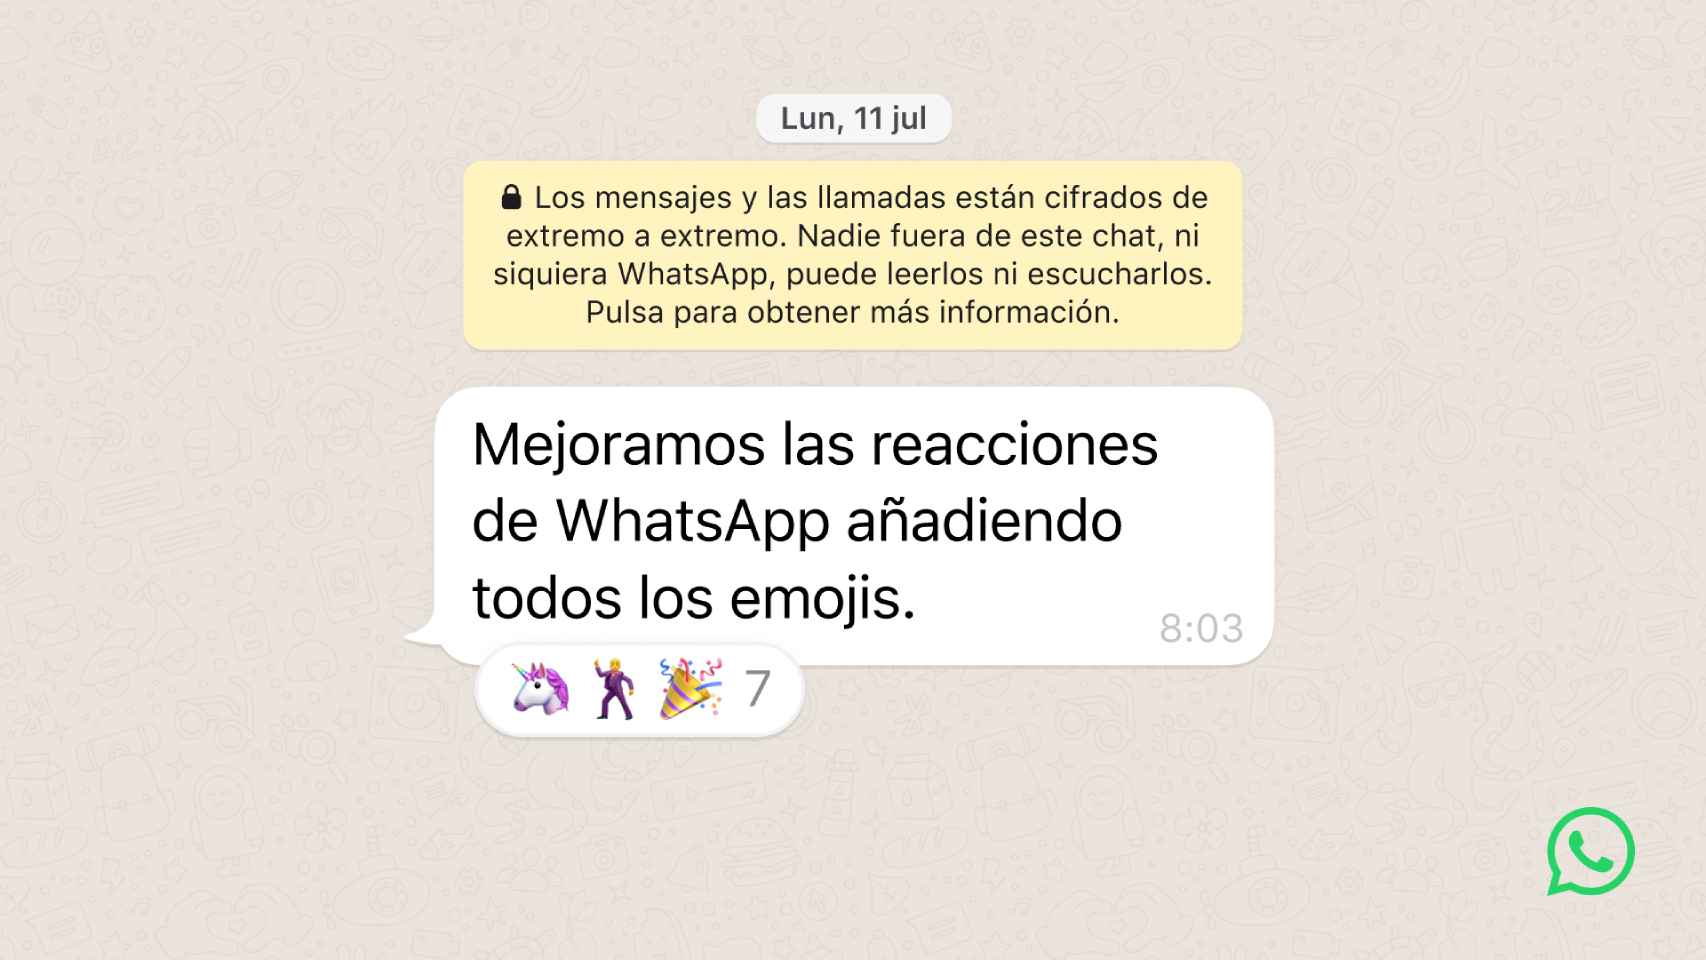 Se puede reaccionar a mensajes con cualquier emoji.